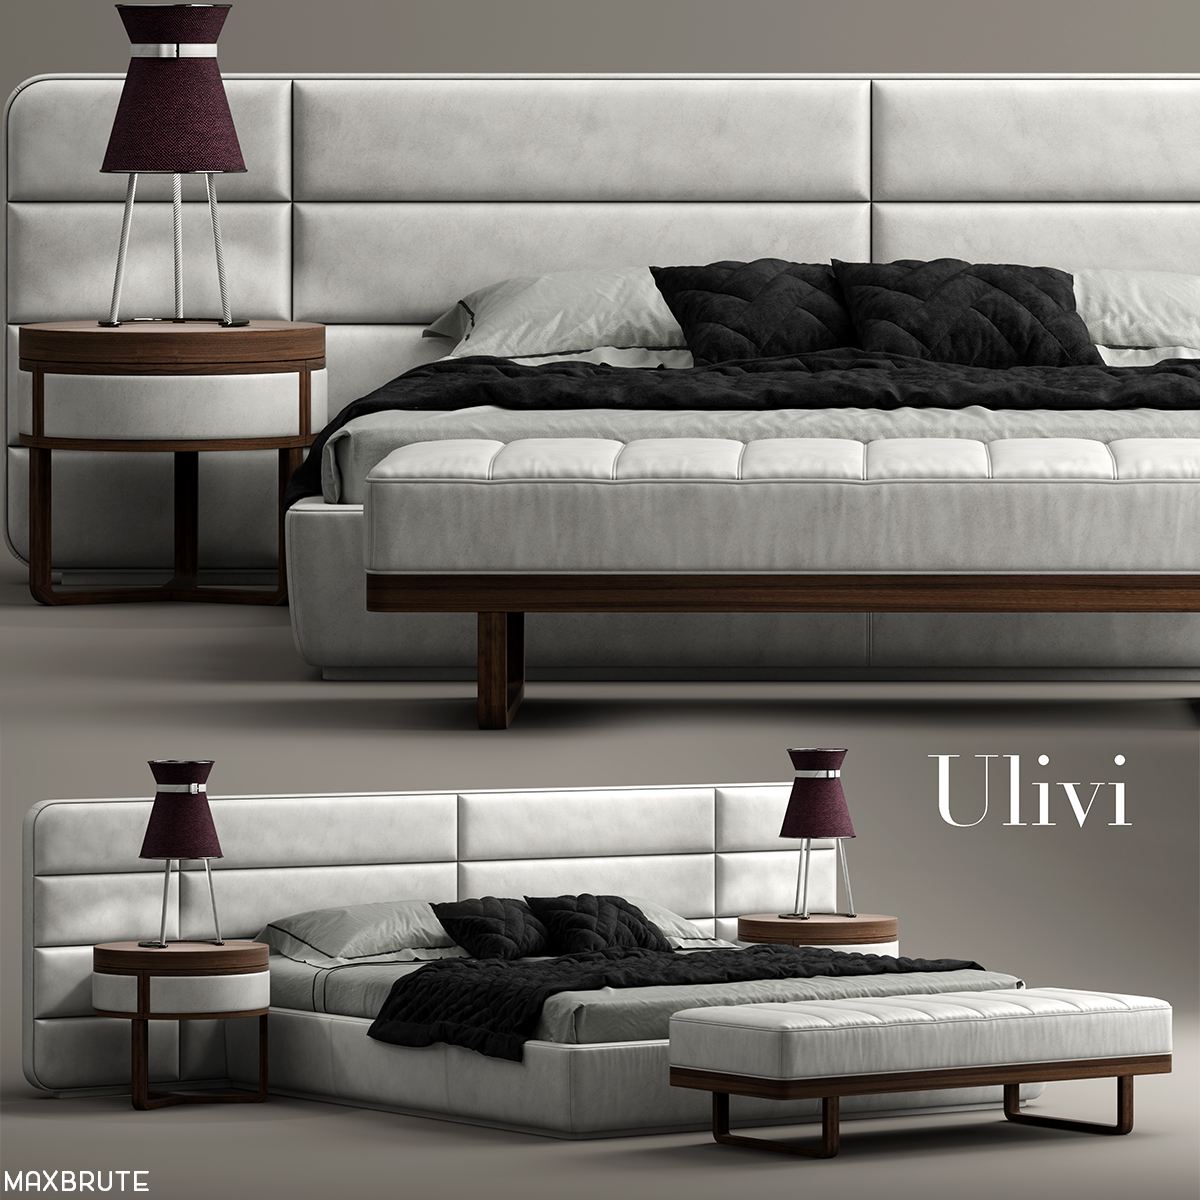 3dSkyHost: ulivi MASTER bed 3dmodel free download